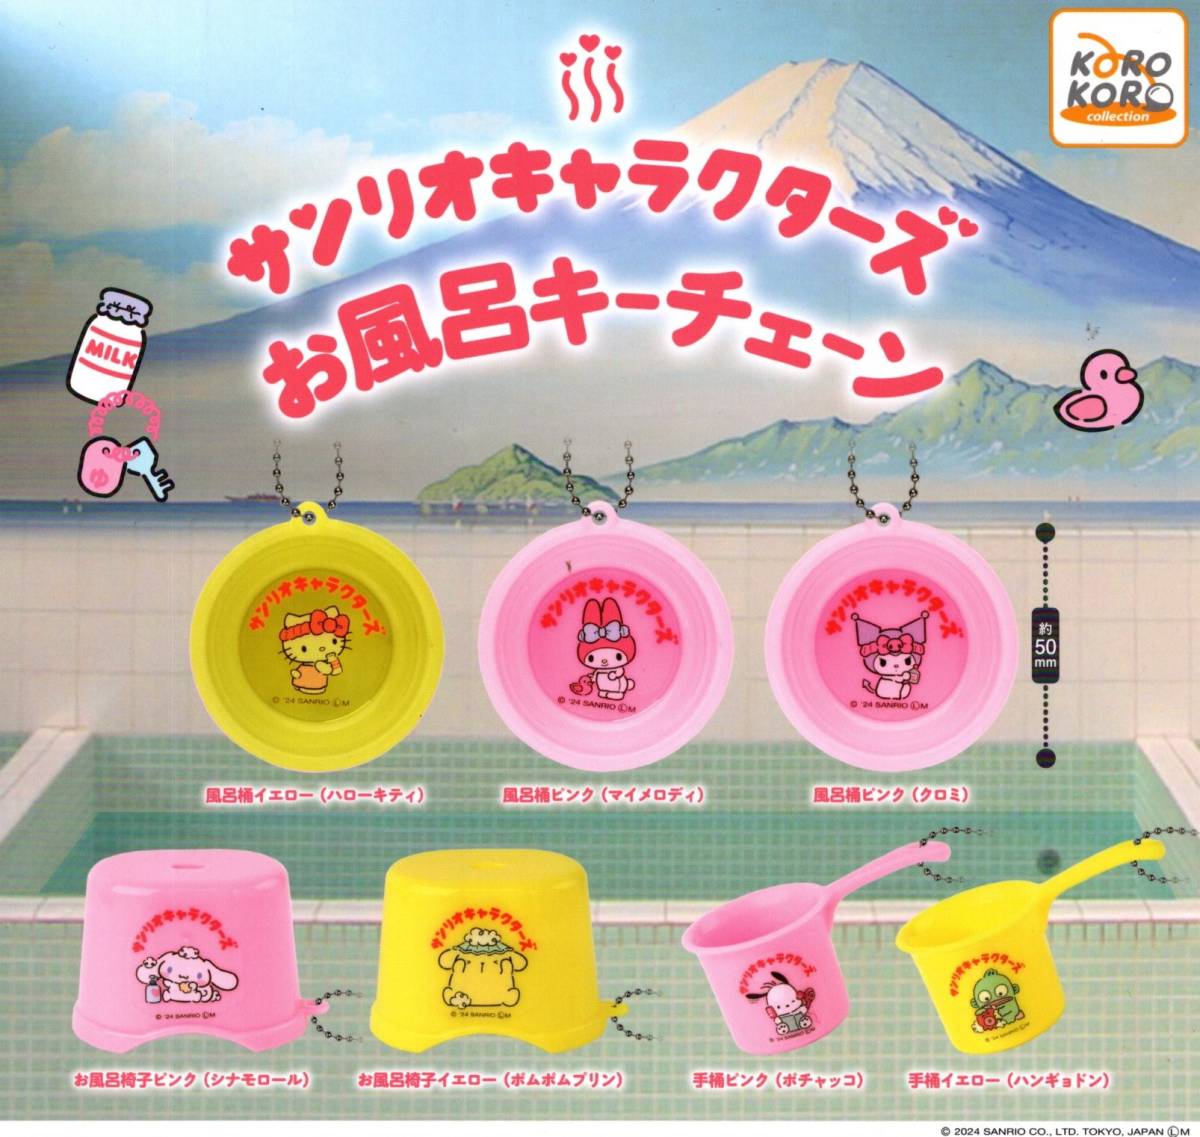 *** быстрое решение! Sanrio герой z ванна цепочка для ключей все 7 вид стоимость доставки 220 иен ~[ общая сумма 2298 иен ~] последний 3/ Pochacco / рукоятка gyo Don / Pochacco *